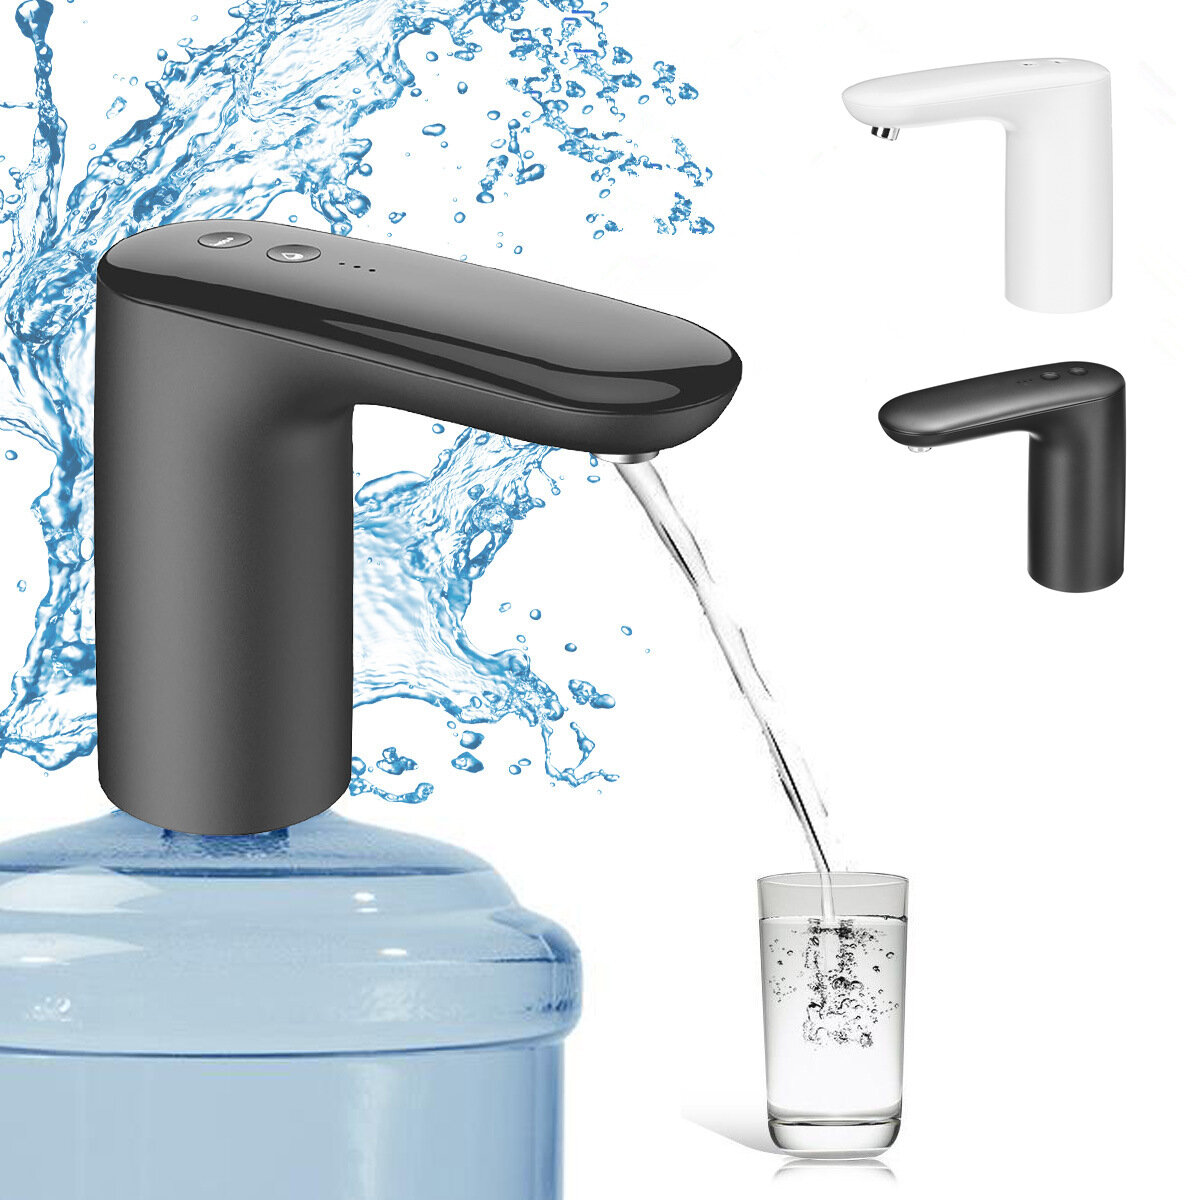 Distributore automatico di acqua elettrico Smart Water Pump per campeggio, picnic, bottiglia da gallone per bere, interruttore di trattamento dell'acqua.